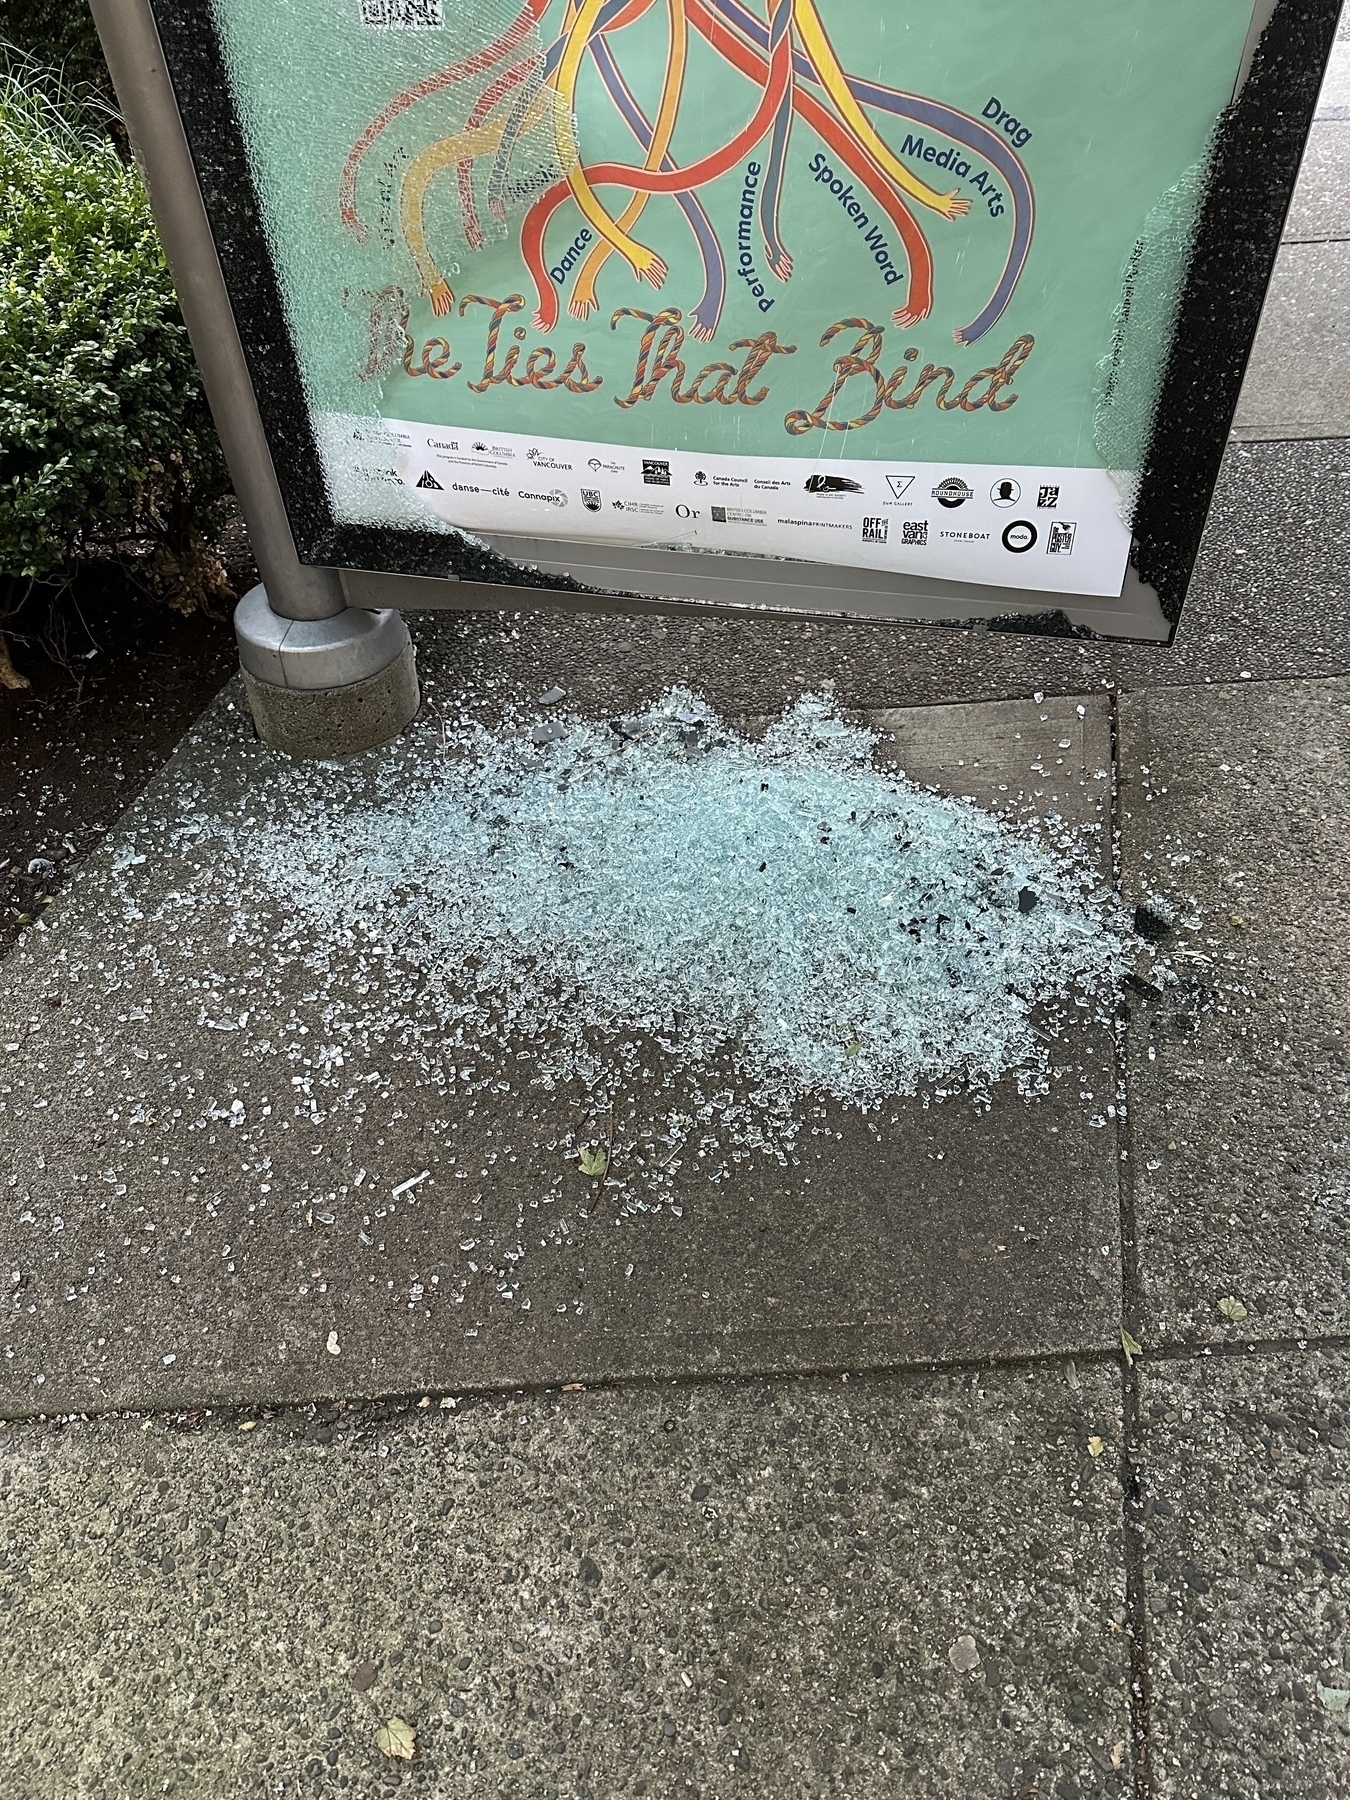 Shattered advertising glass.